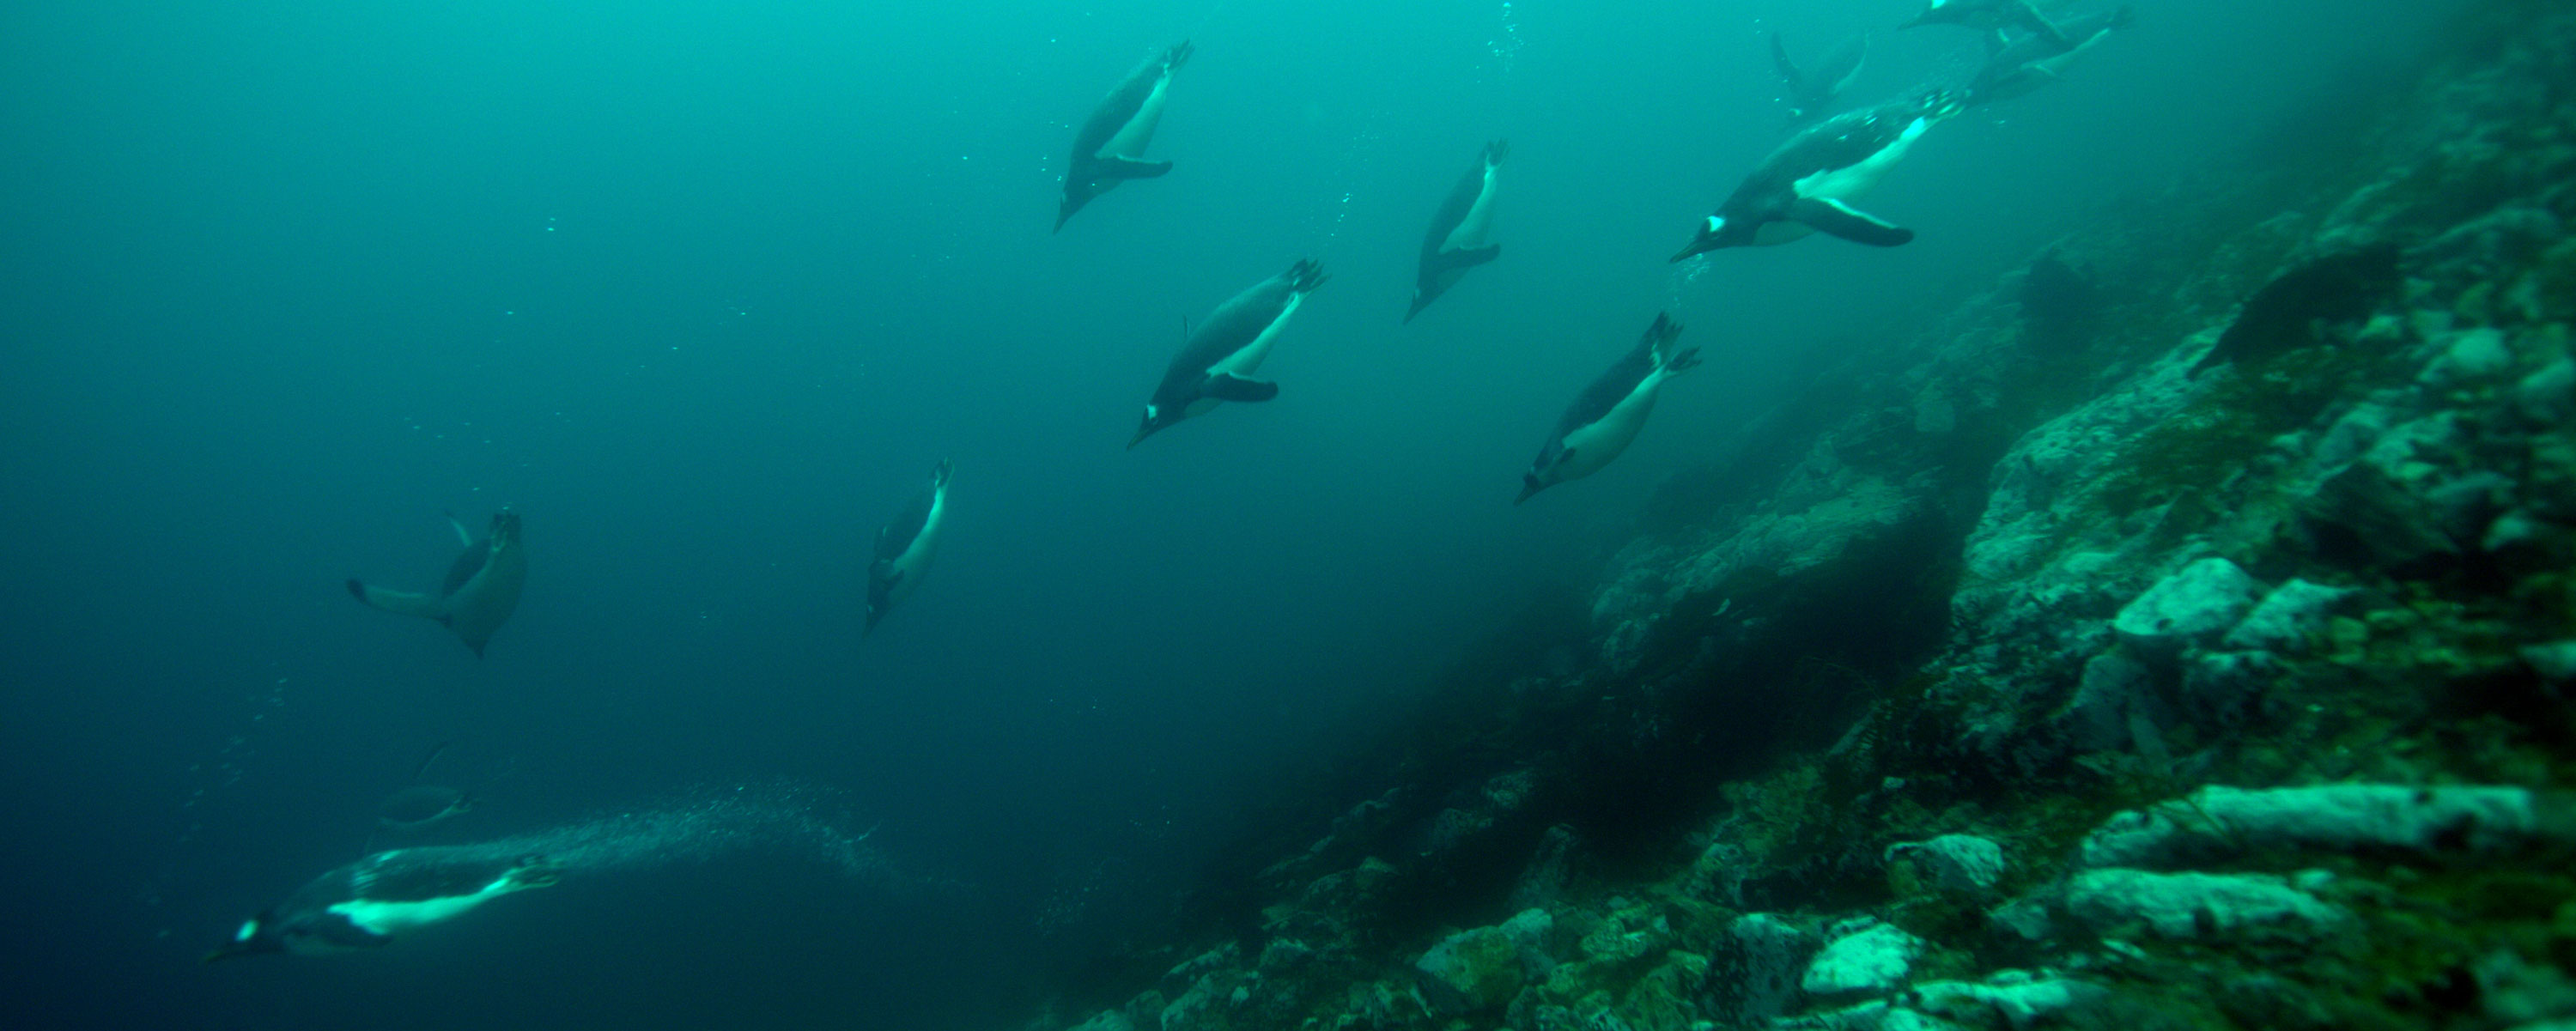 gentoo penguins Antarctica underwater